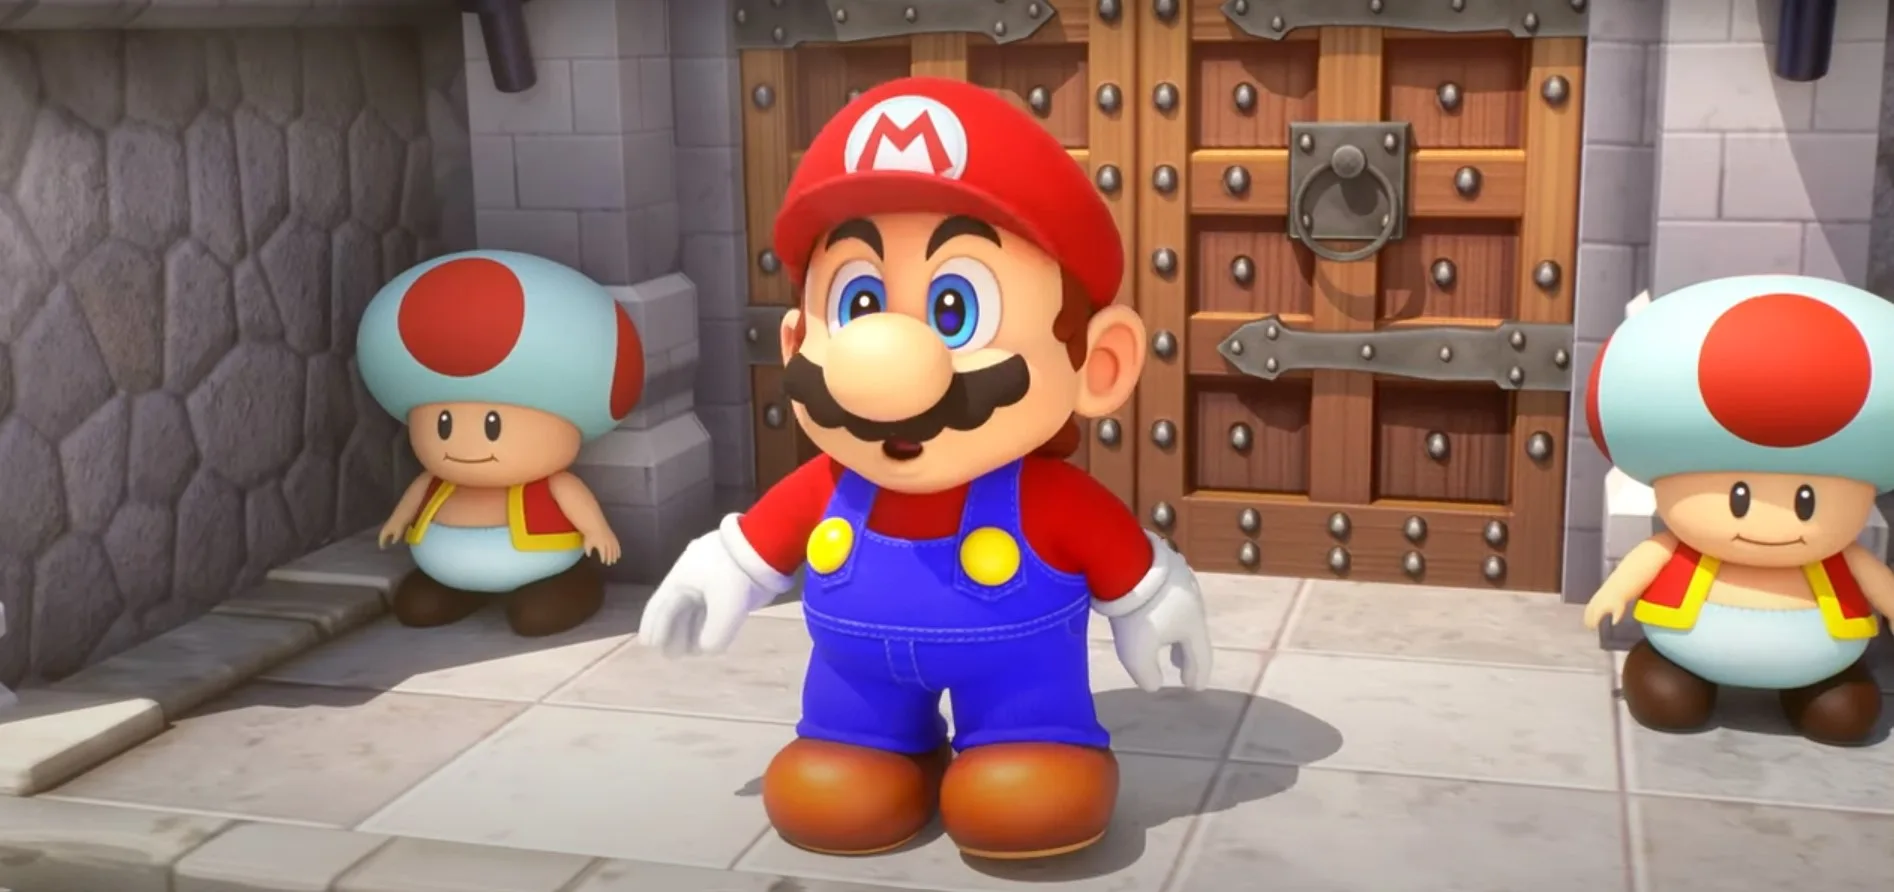 Super Mario RPG Ganha Novo Trailer de Visão Geral no Japão